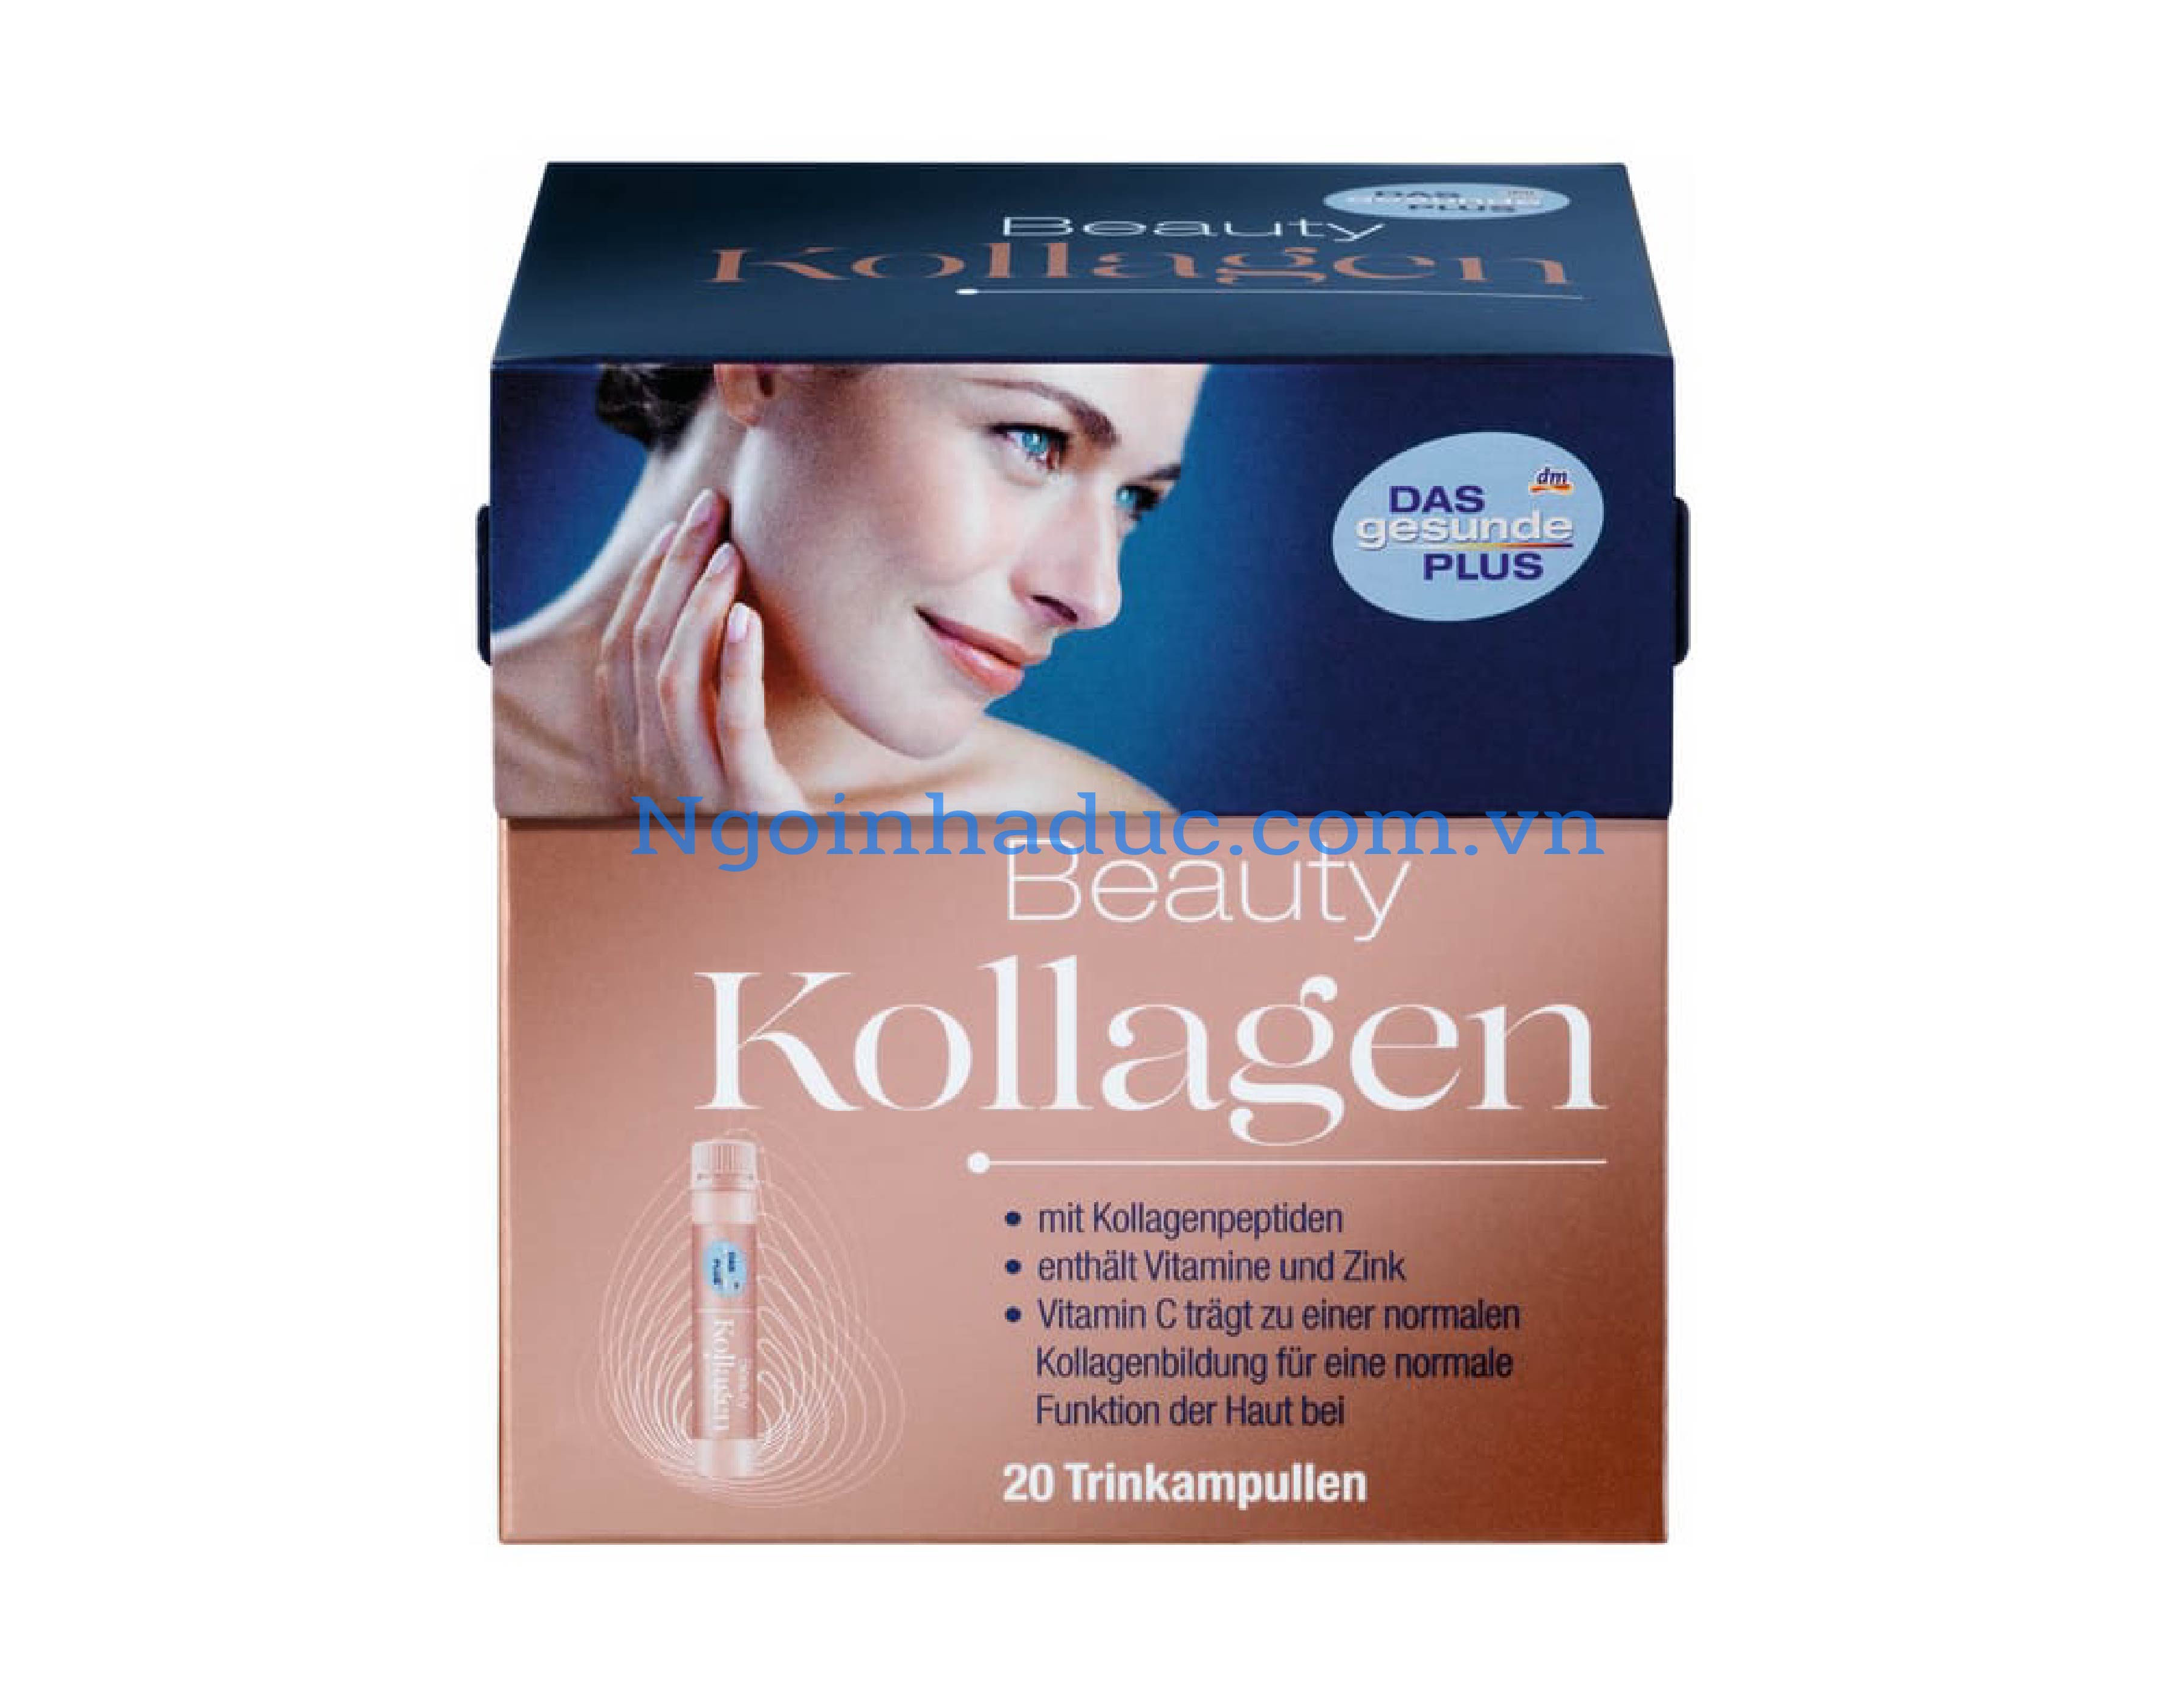 Collagen uống đẹp da Kollagen Beauty DAS Gesunde PLUS (Hộp 20 ống x 25ml)